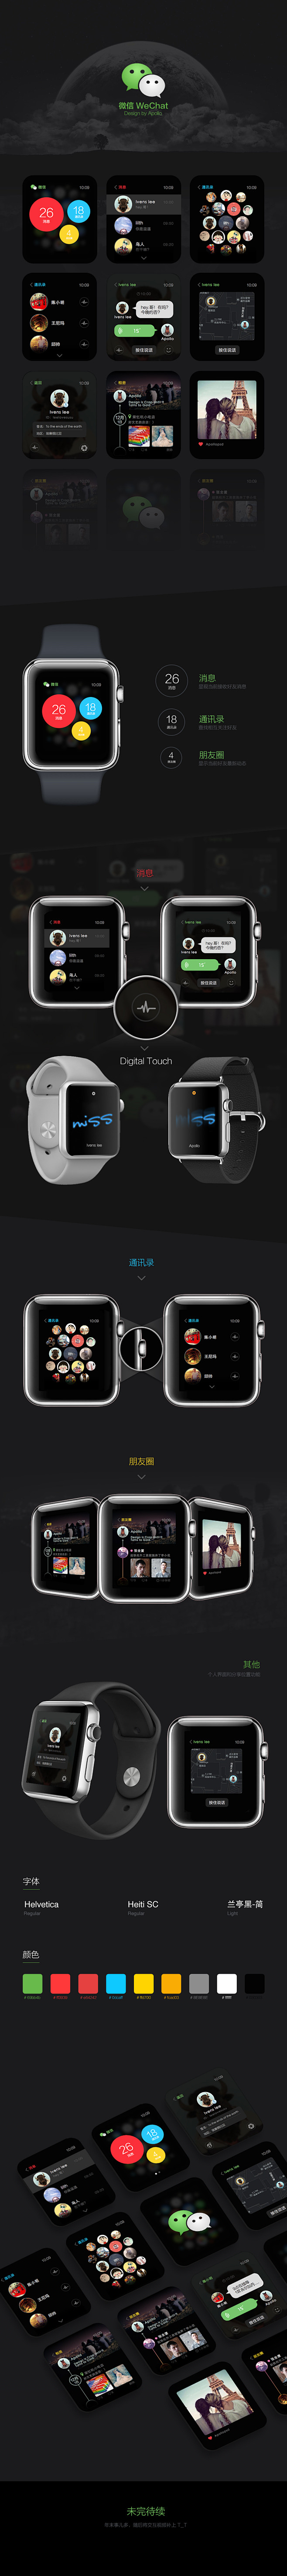 微信 Apple watch界面设计 b...